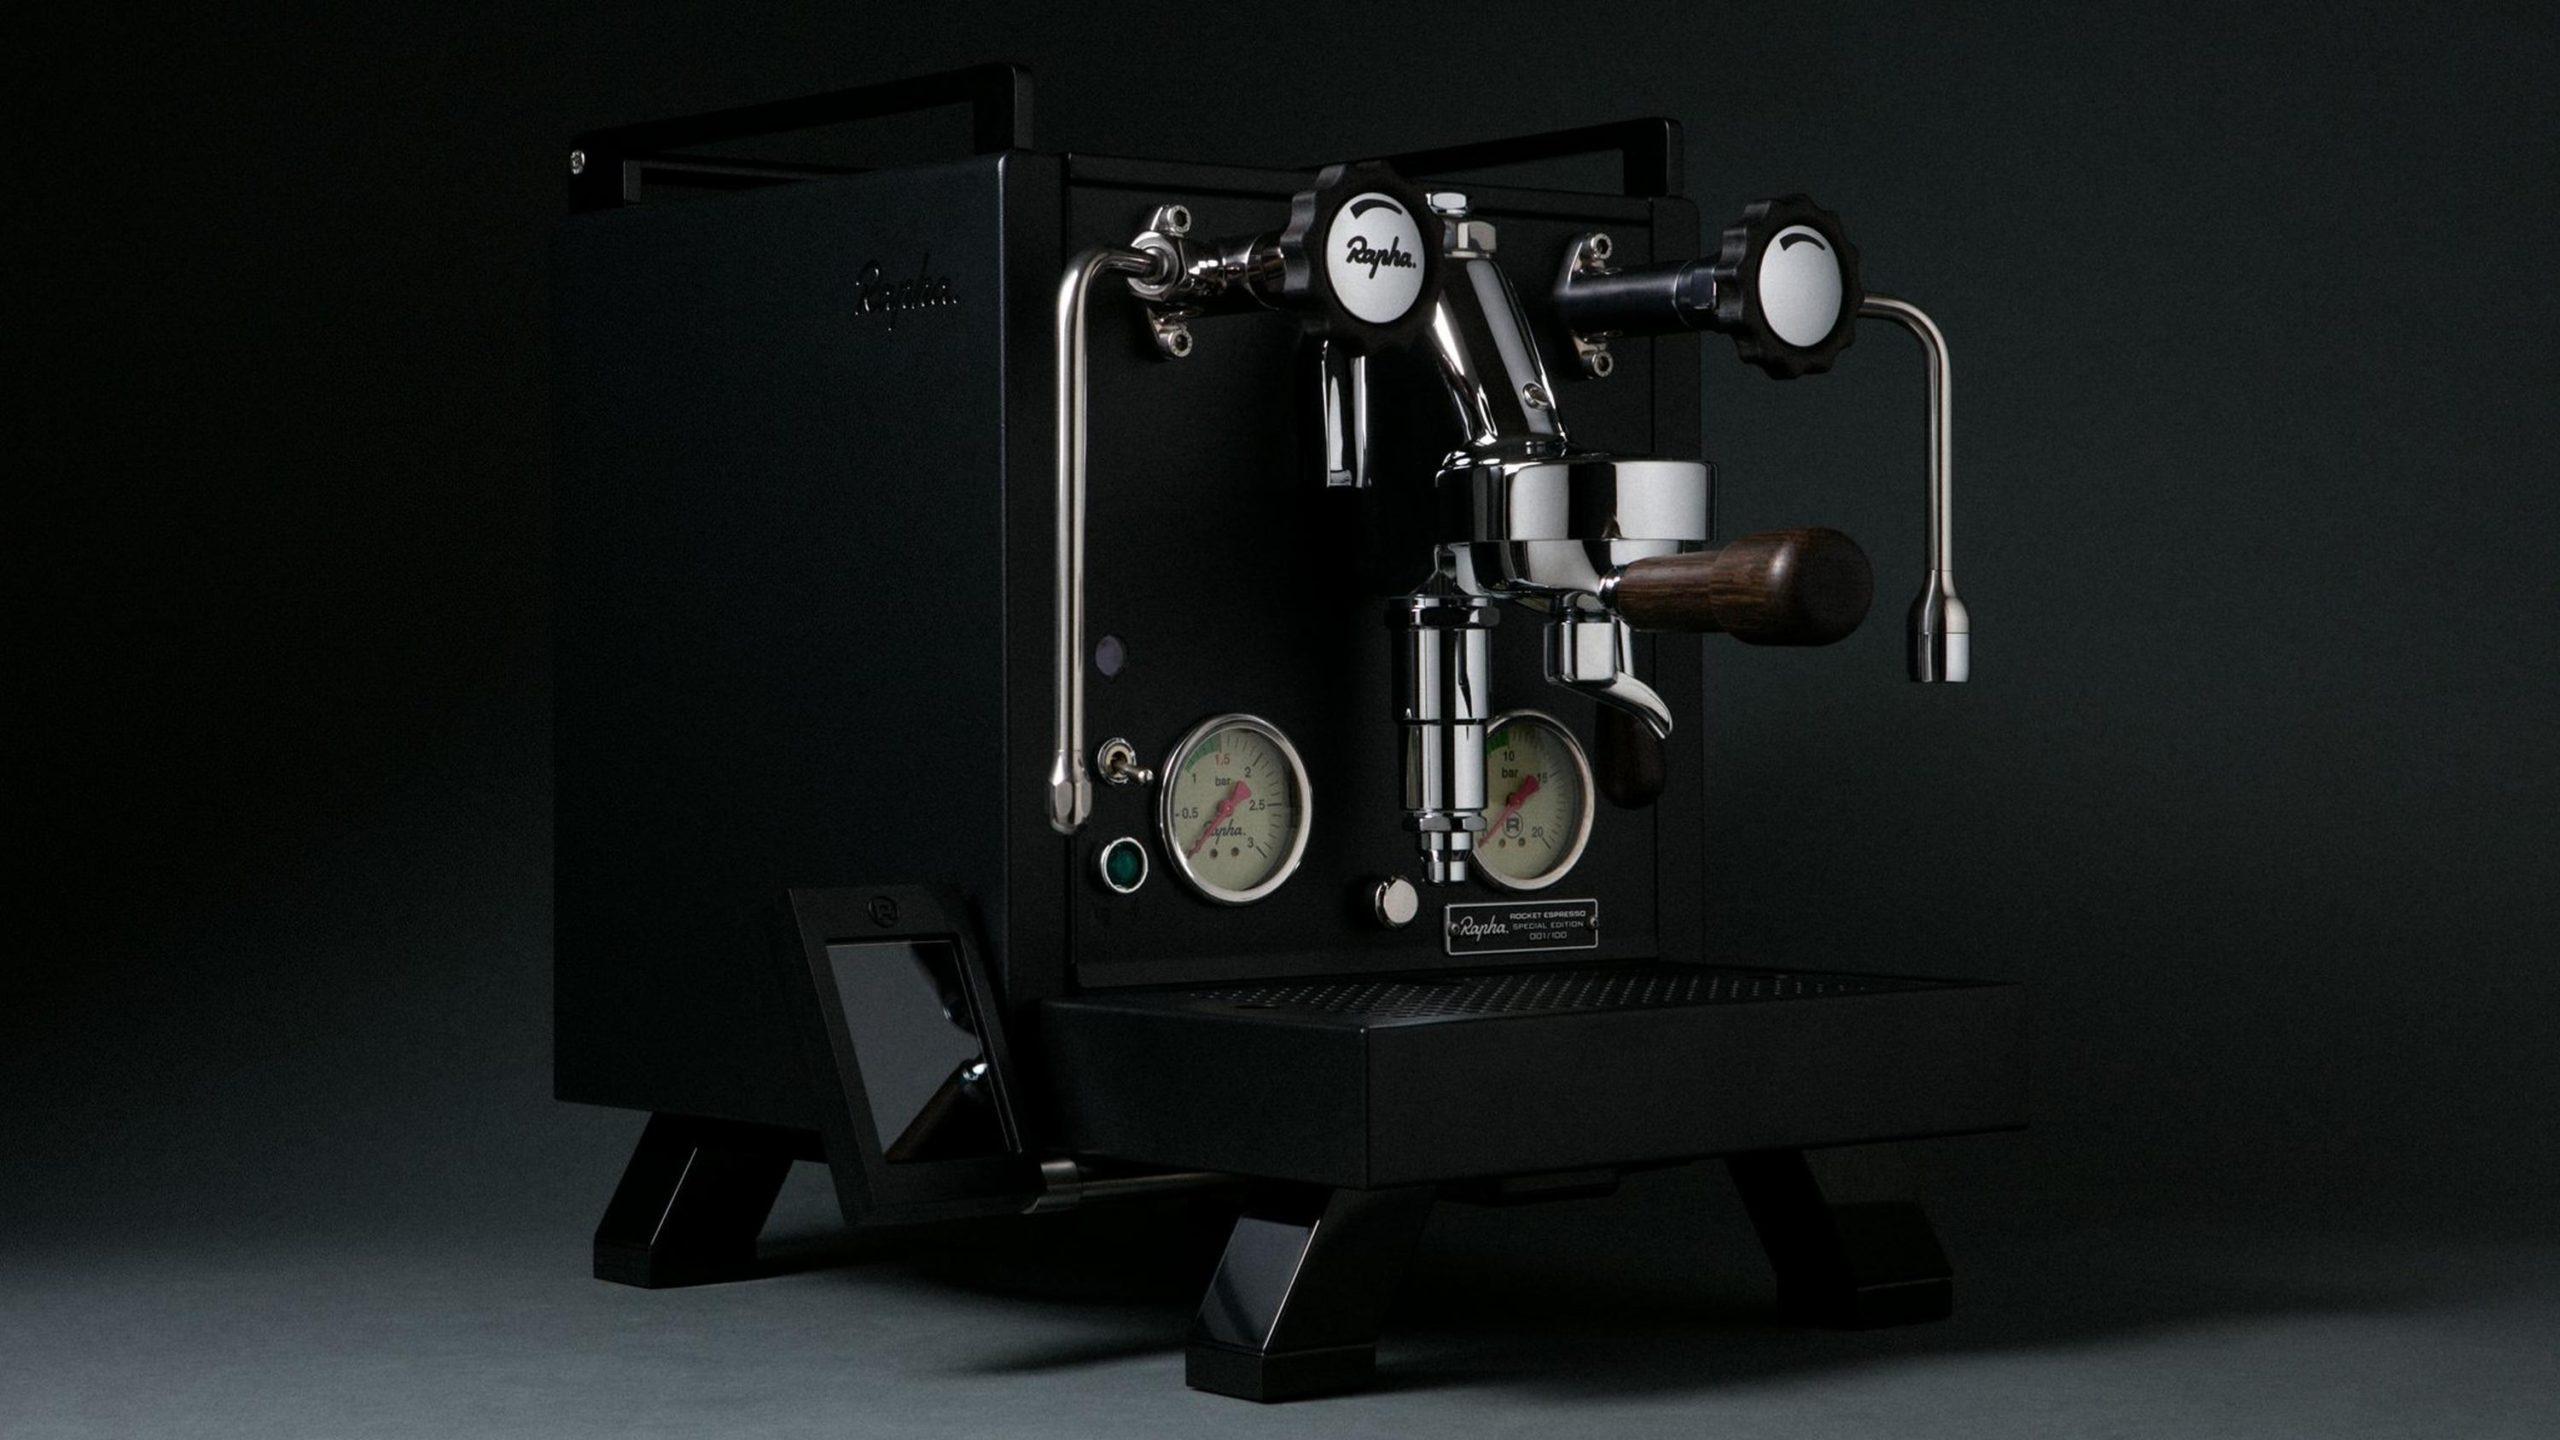 rapha rocket espresso machine